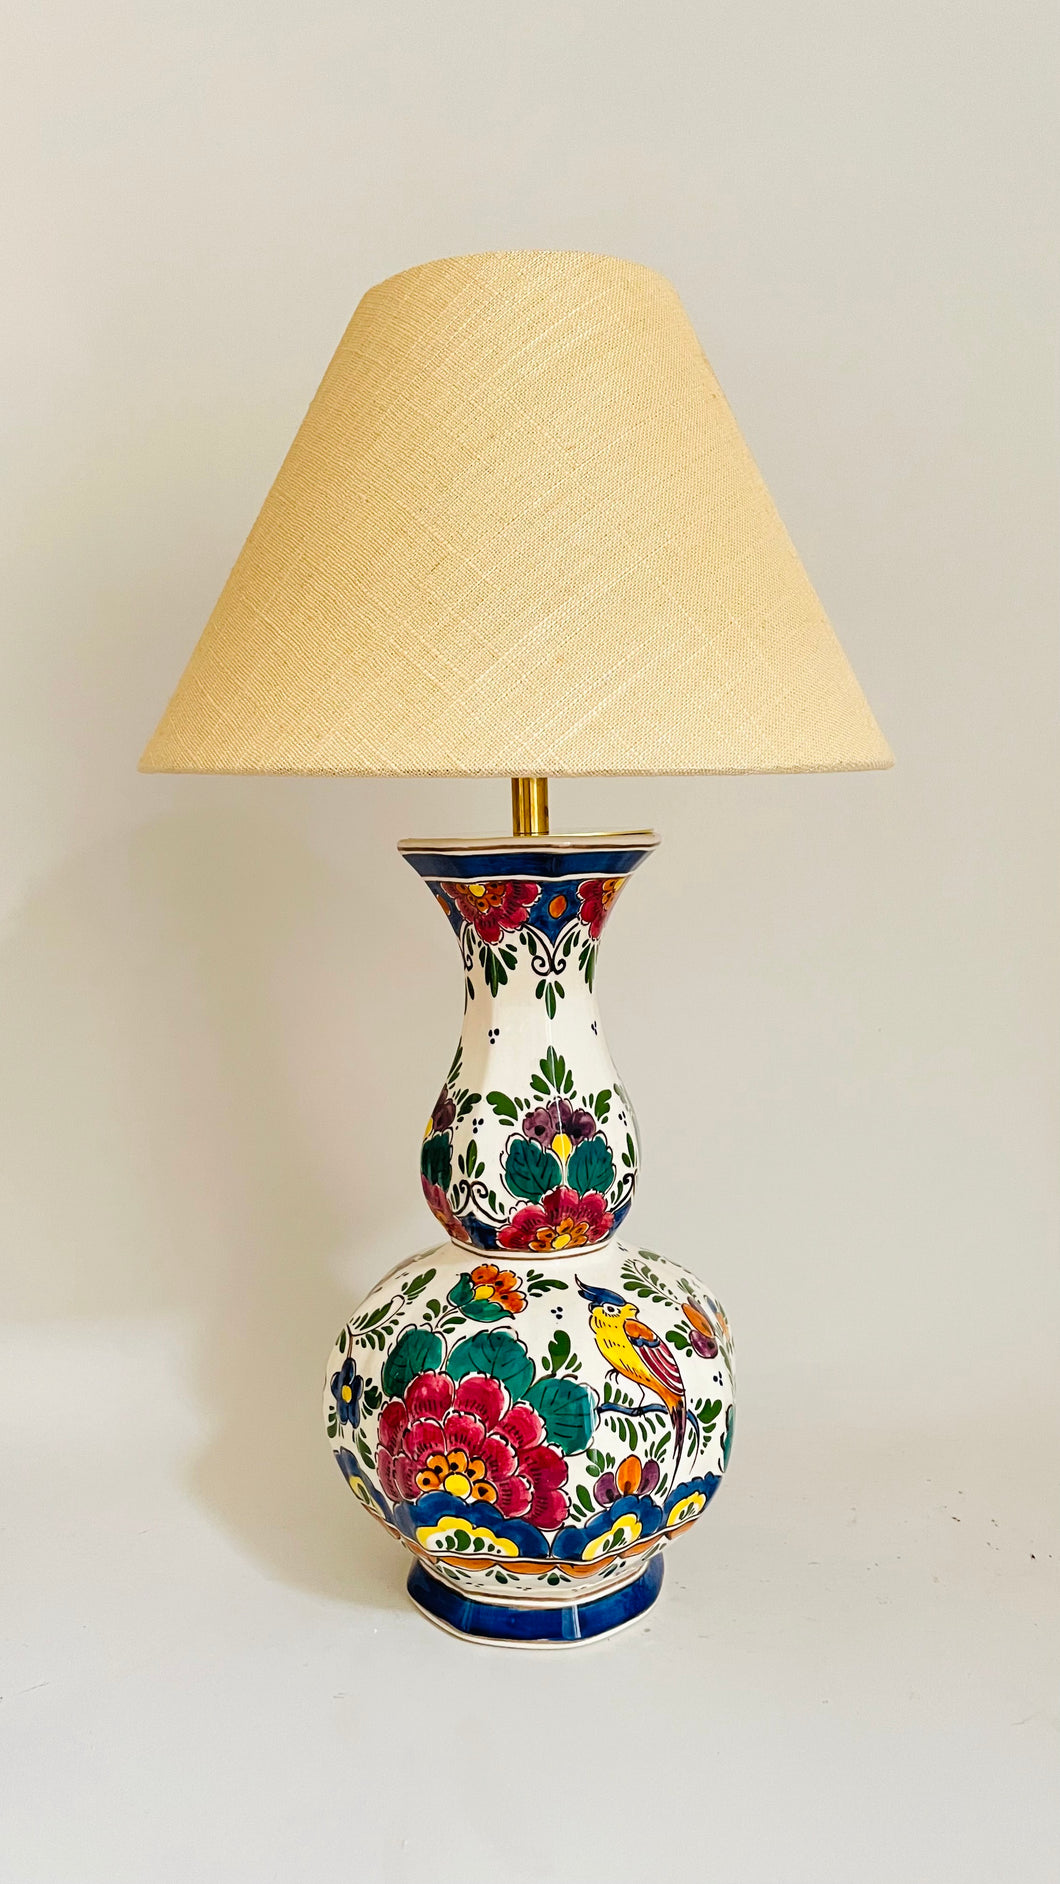 Antique Makkum Lamp - pre order for mid Nov